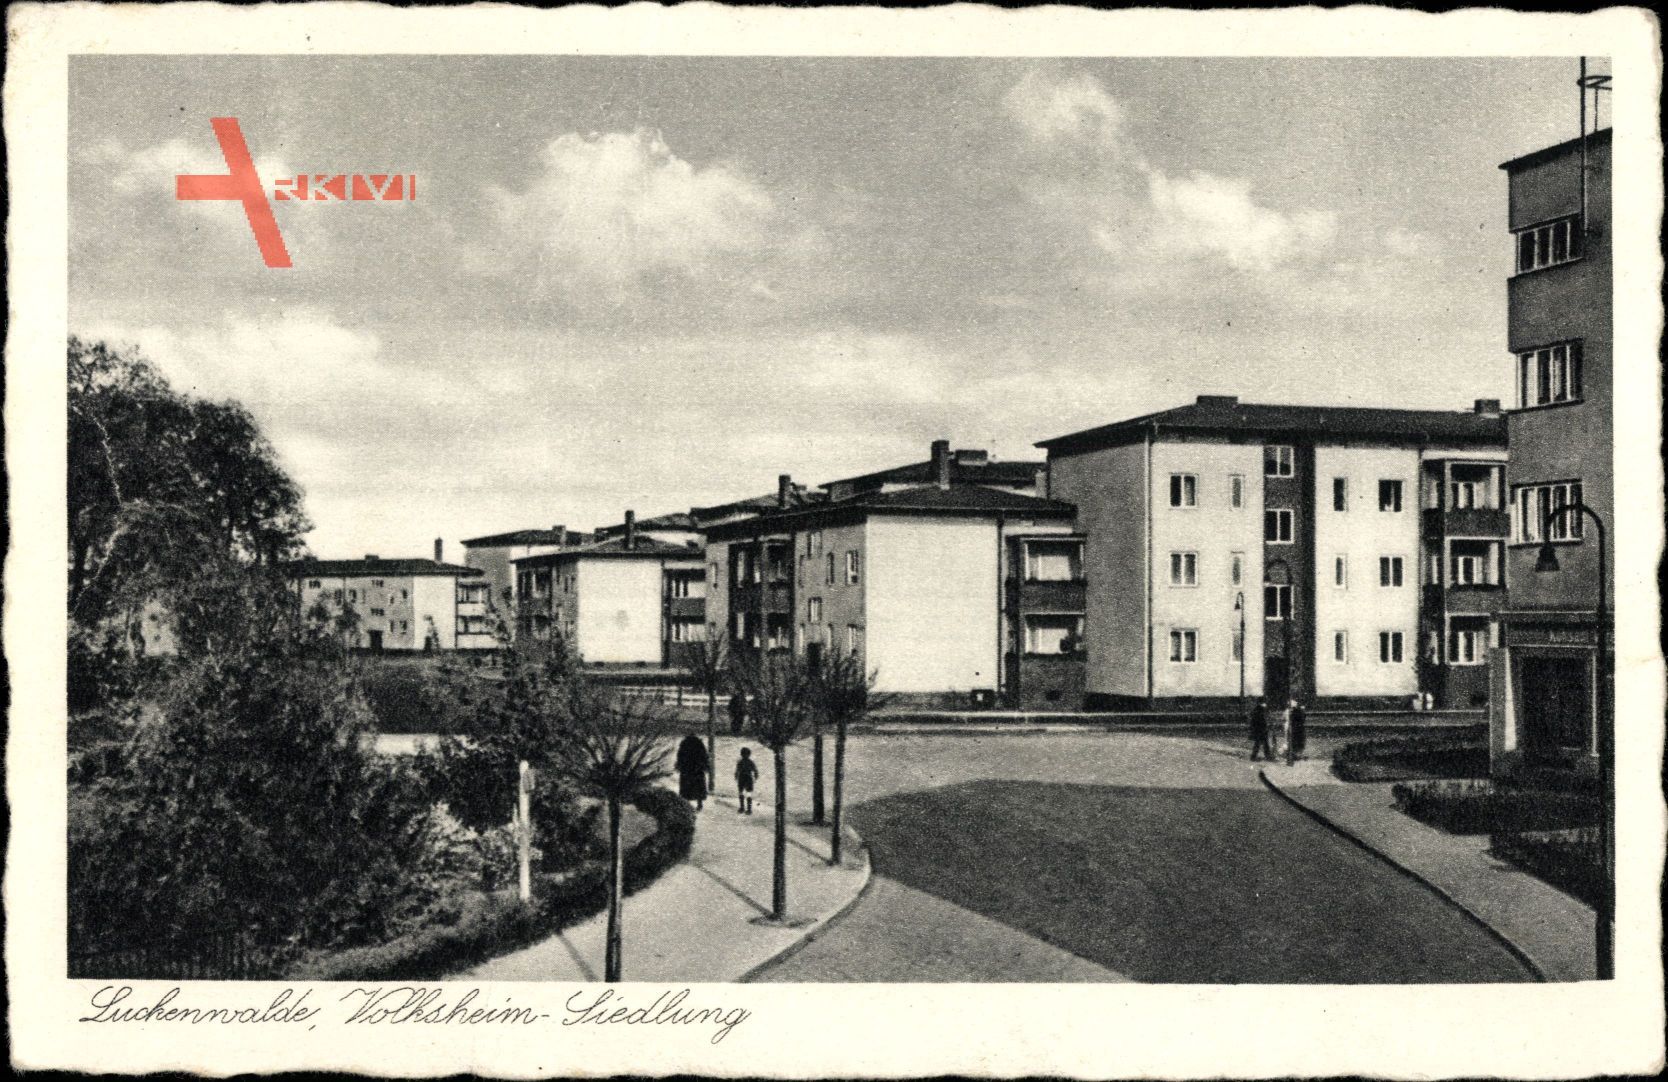 Luckenwalde Kr. Teltow Fläming, Volksheim Siedlung, Straßenpartie, Plattenbau